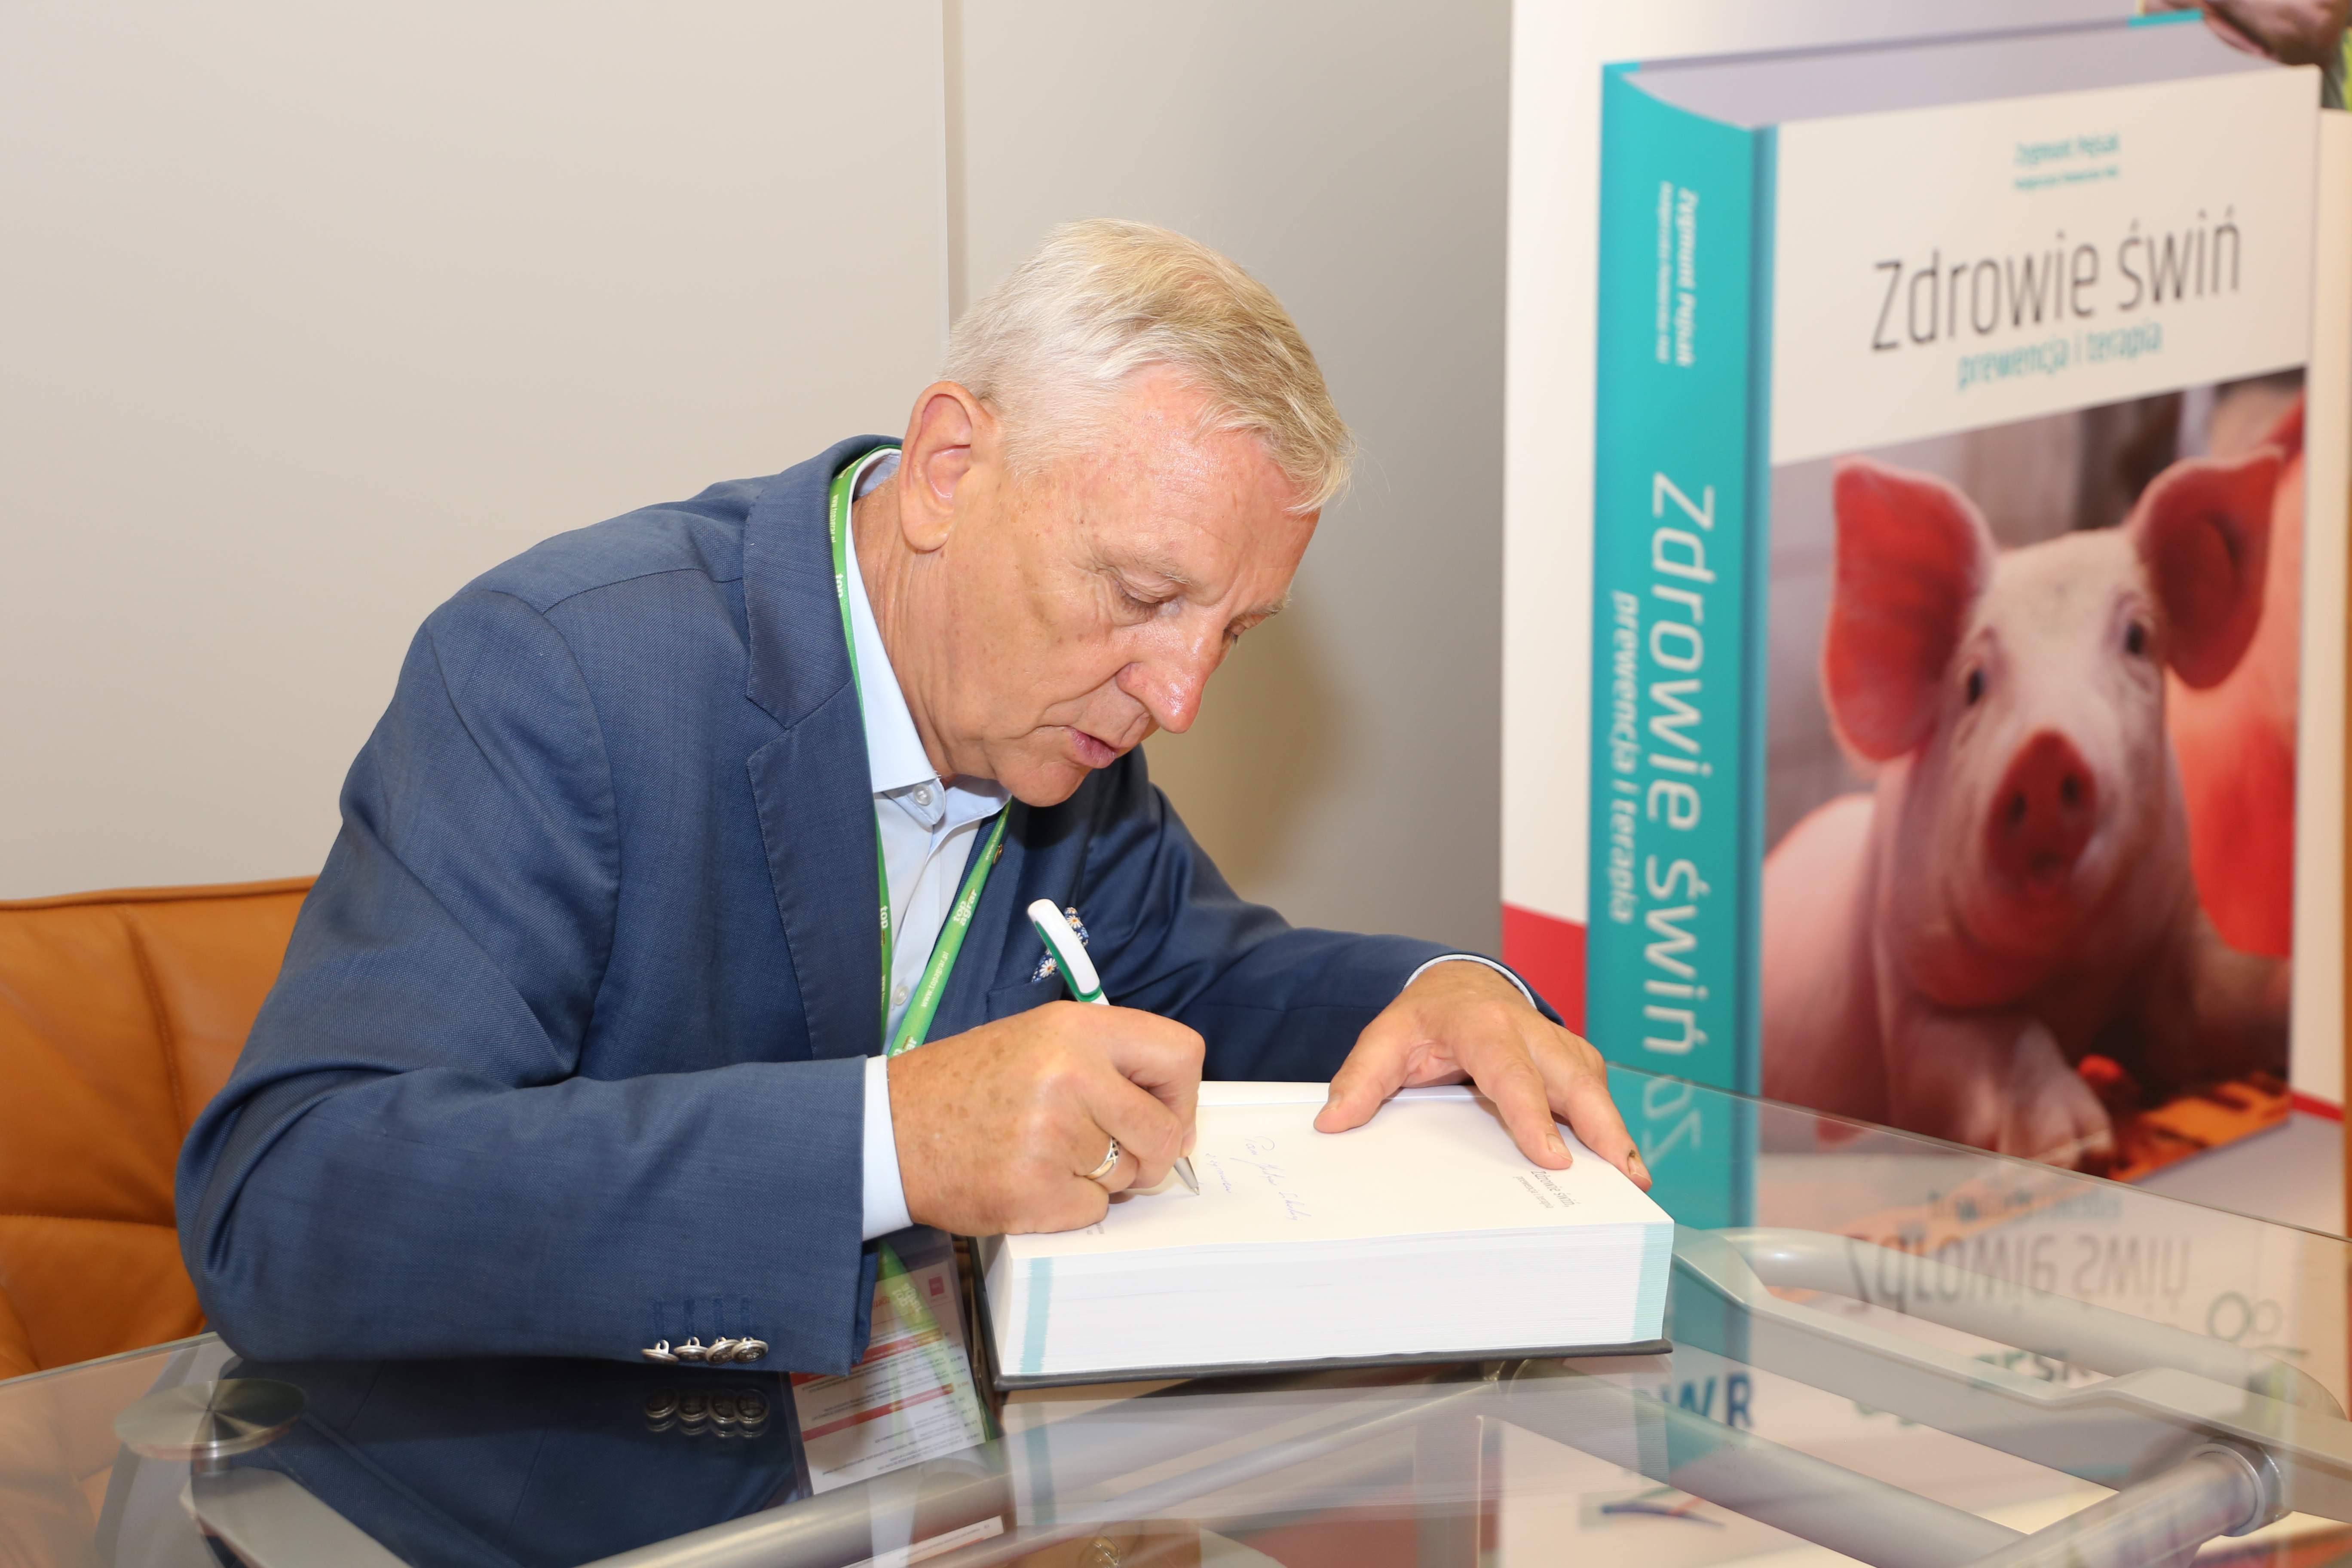 Każdy kto nabył podczas dzisiejszej premiery najnowszą książkę prof. Zygmunta Pejsaka „Zdrowie świń, profilaktyka i terapia” mógł liczyć na autorską dedykację.